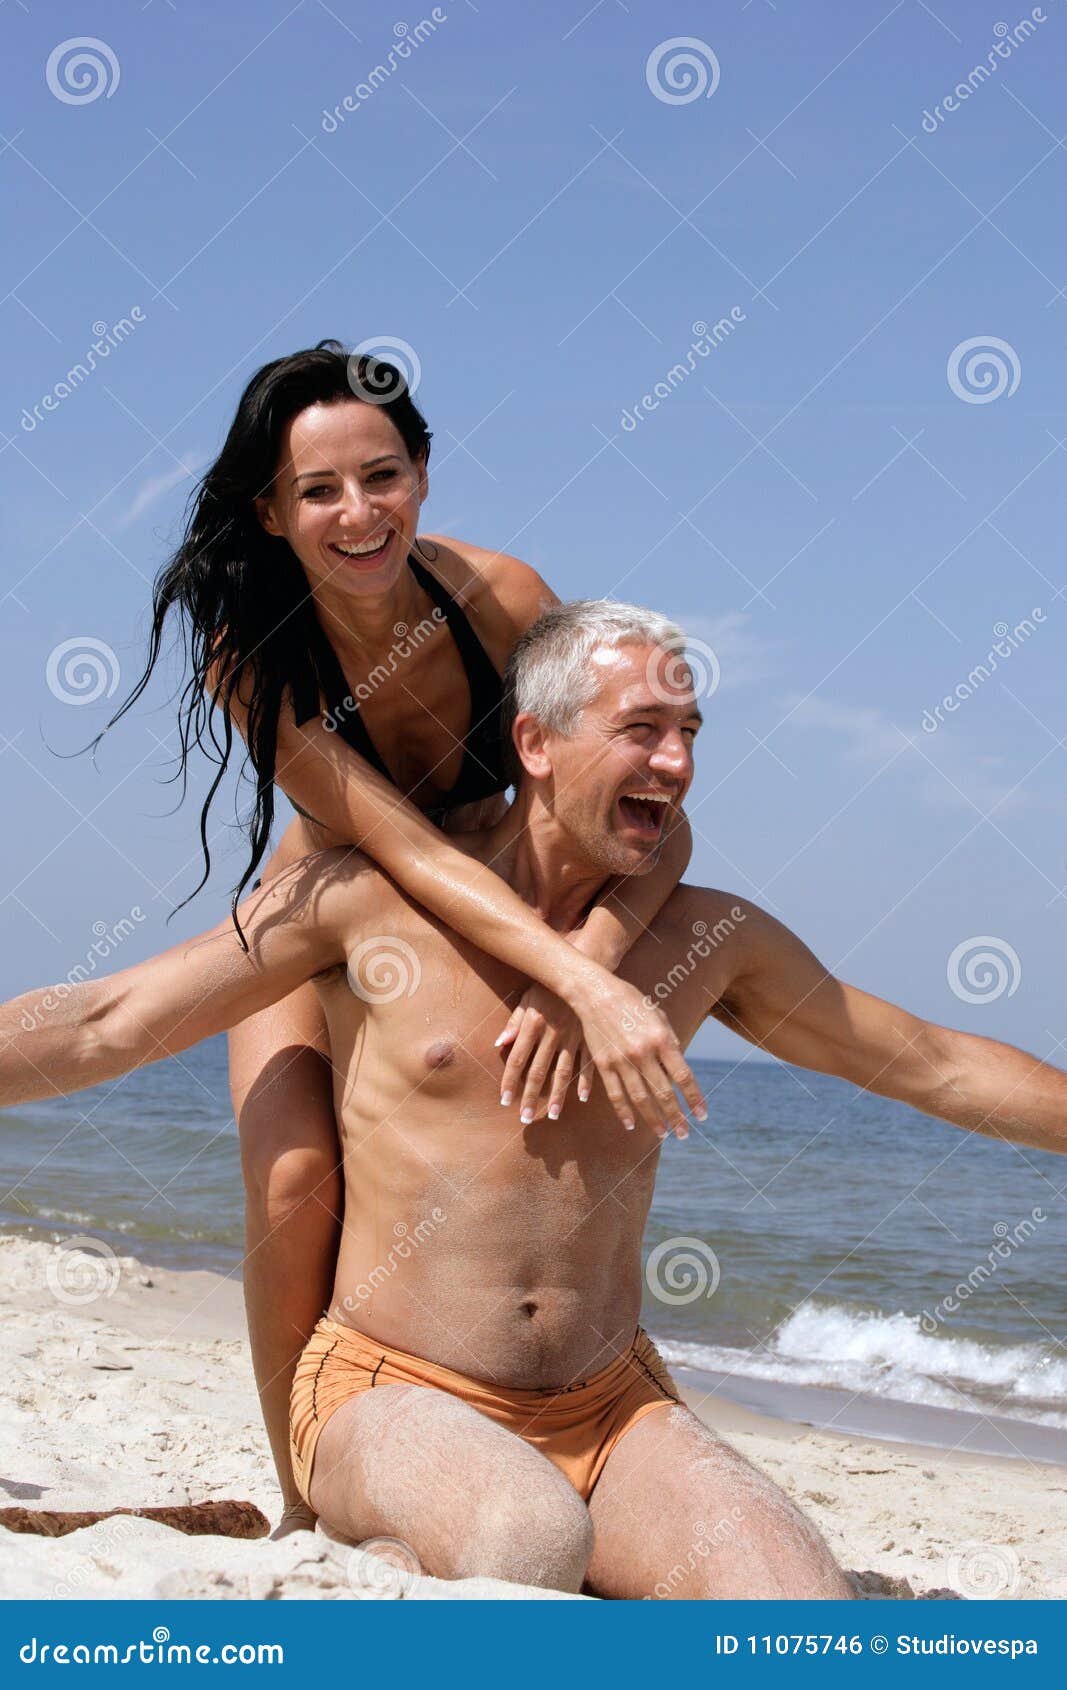 amjad siddiqui add naked beach couples pics photo